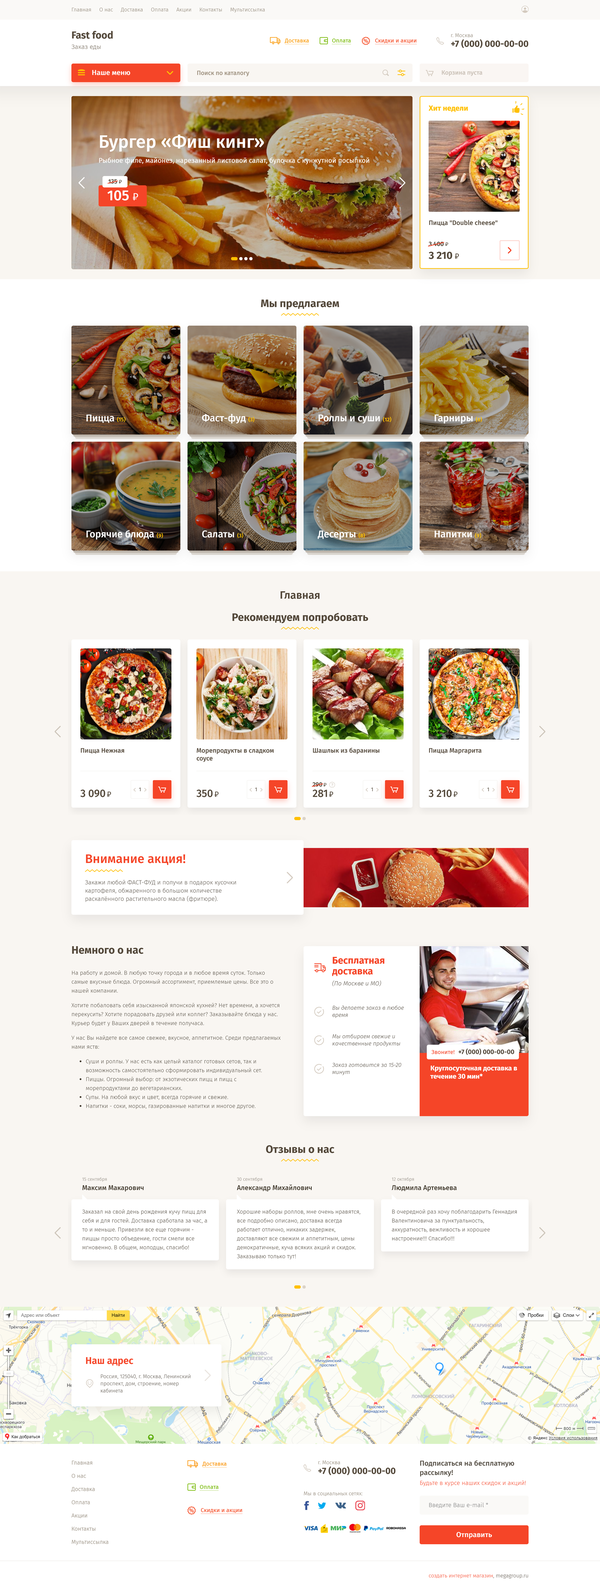 Сайт по заказу и доставки готовой еды